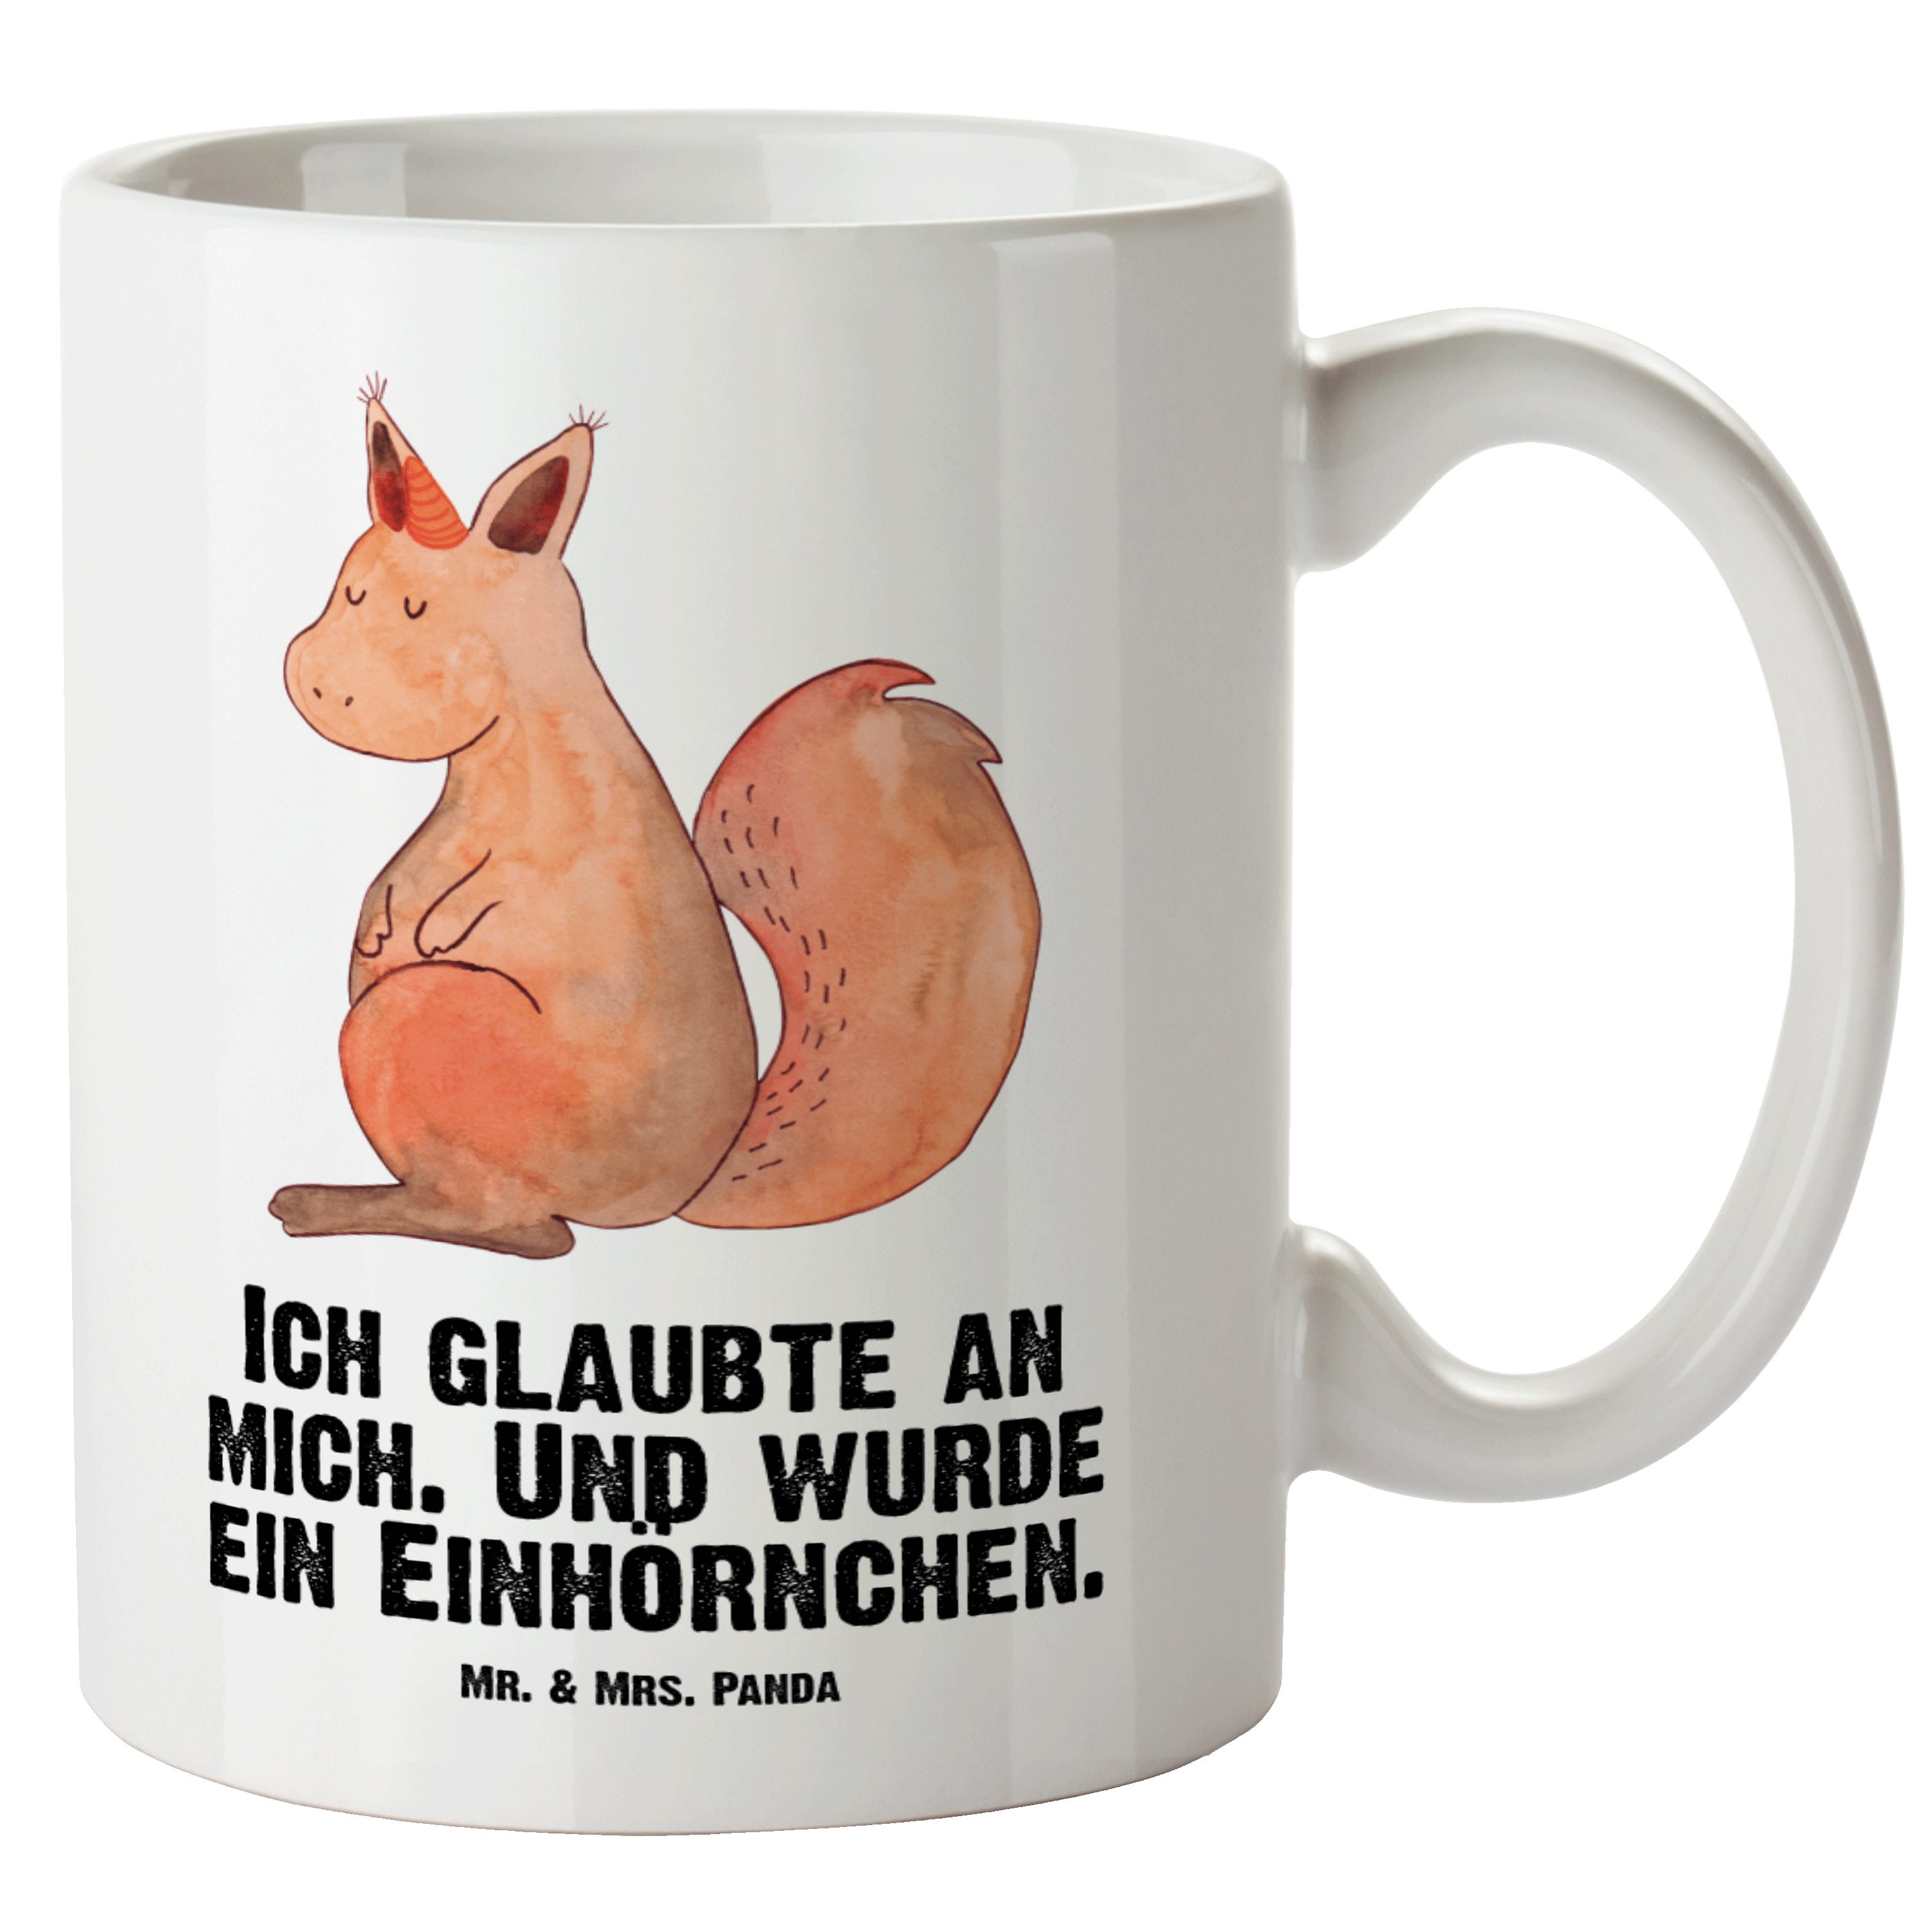 Mr. & Mrs. Panda Tasse Einhörnchen Glaube - Weiß - Geschenk, Pegasus, Einhorn, Große Tasse, XL Tasse Keramik